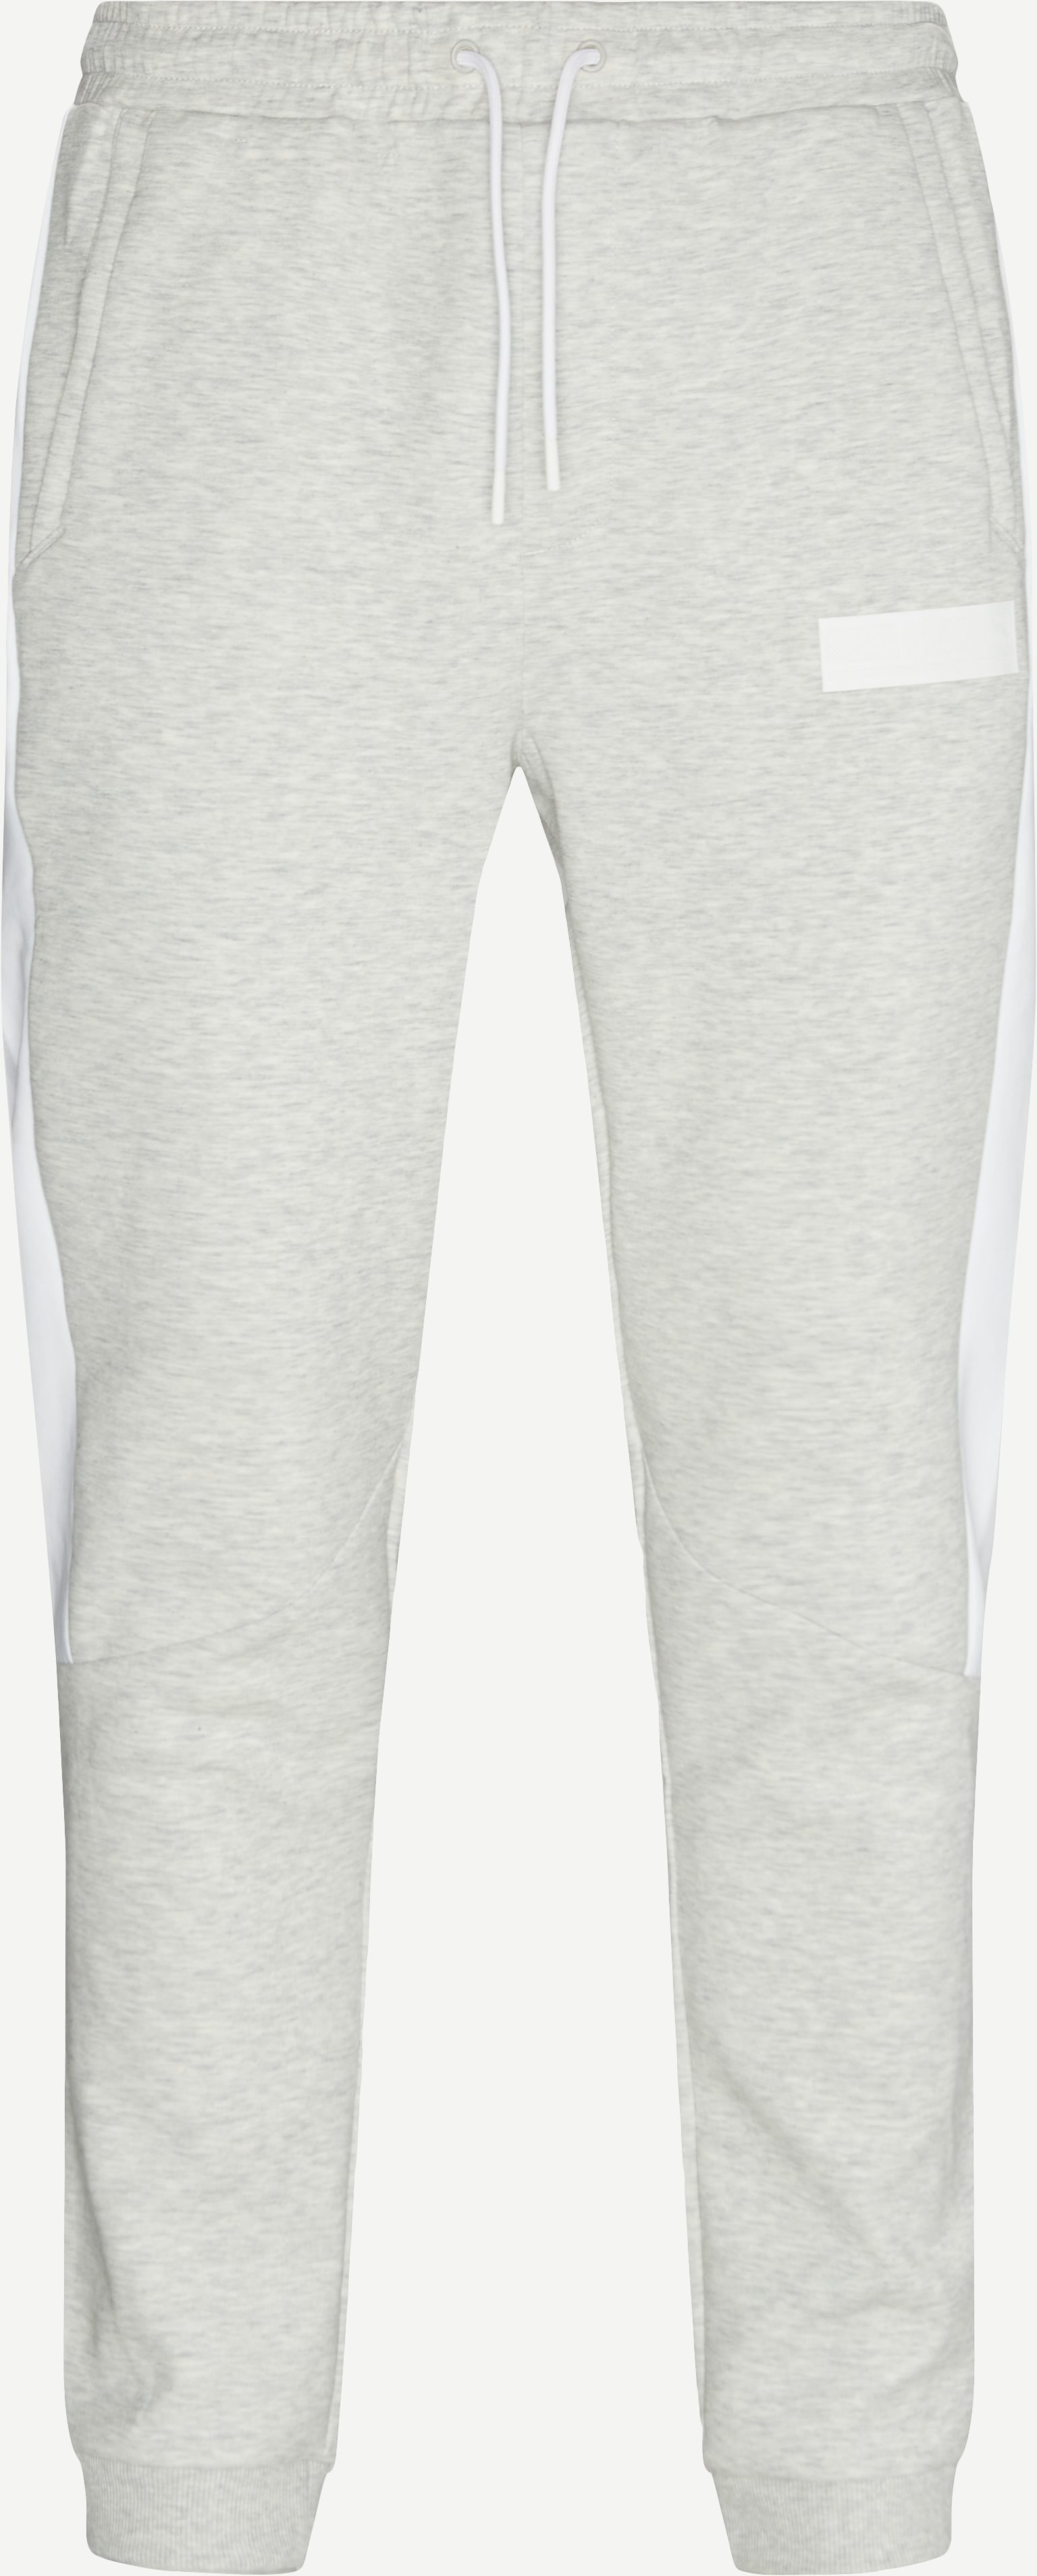 Hadiko Batch Sweatpants - Trousers - Regular fit - Grey